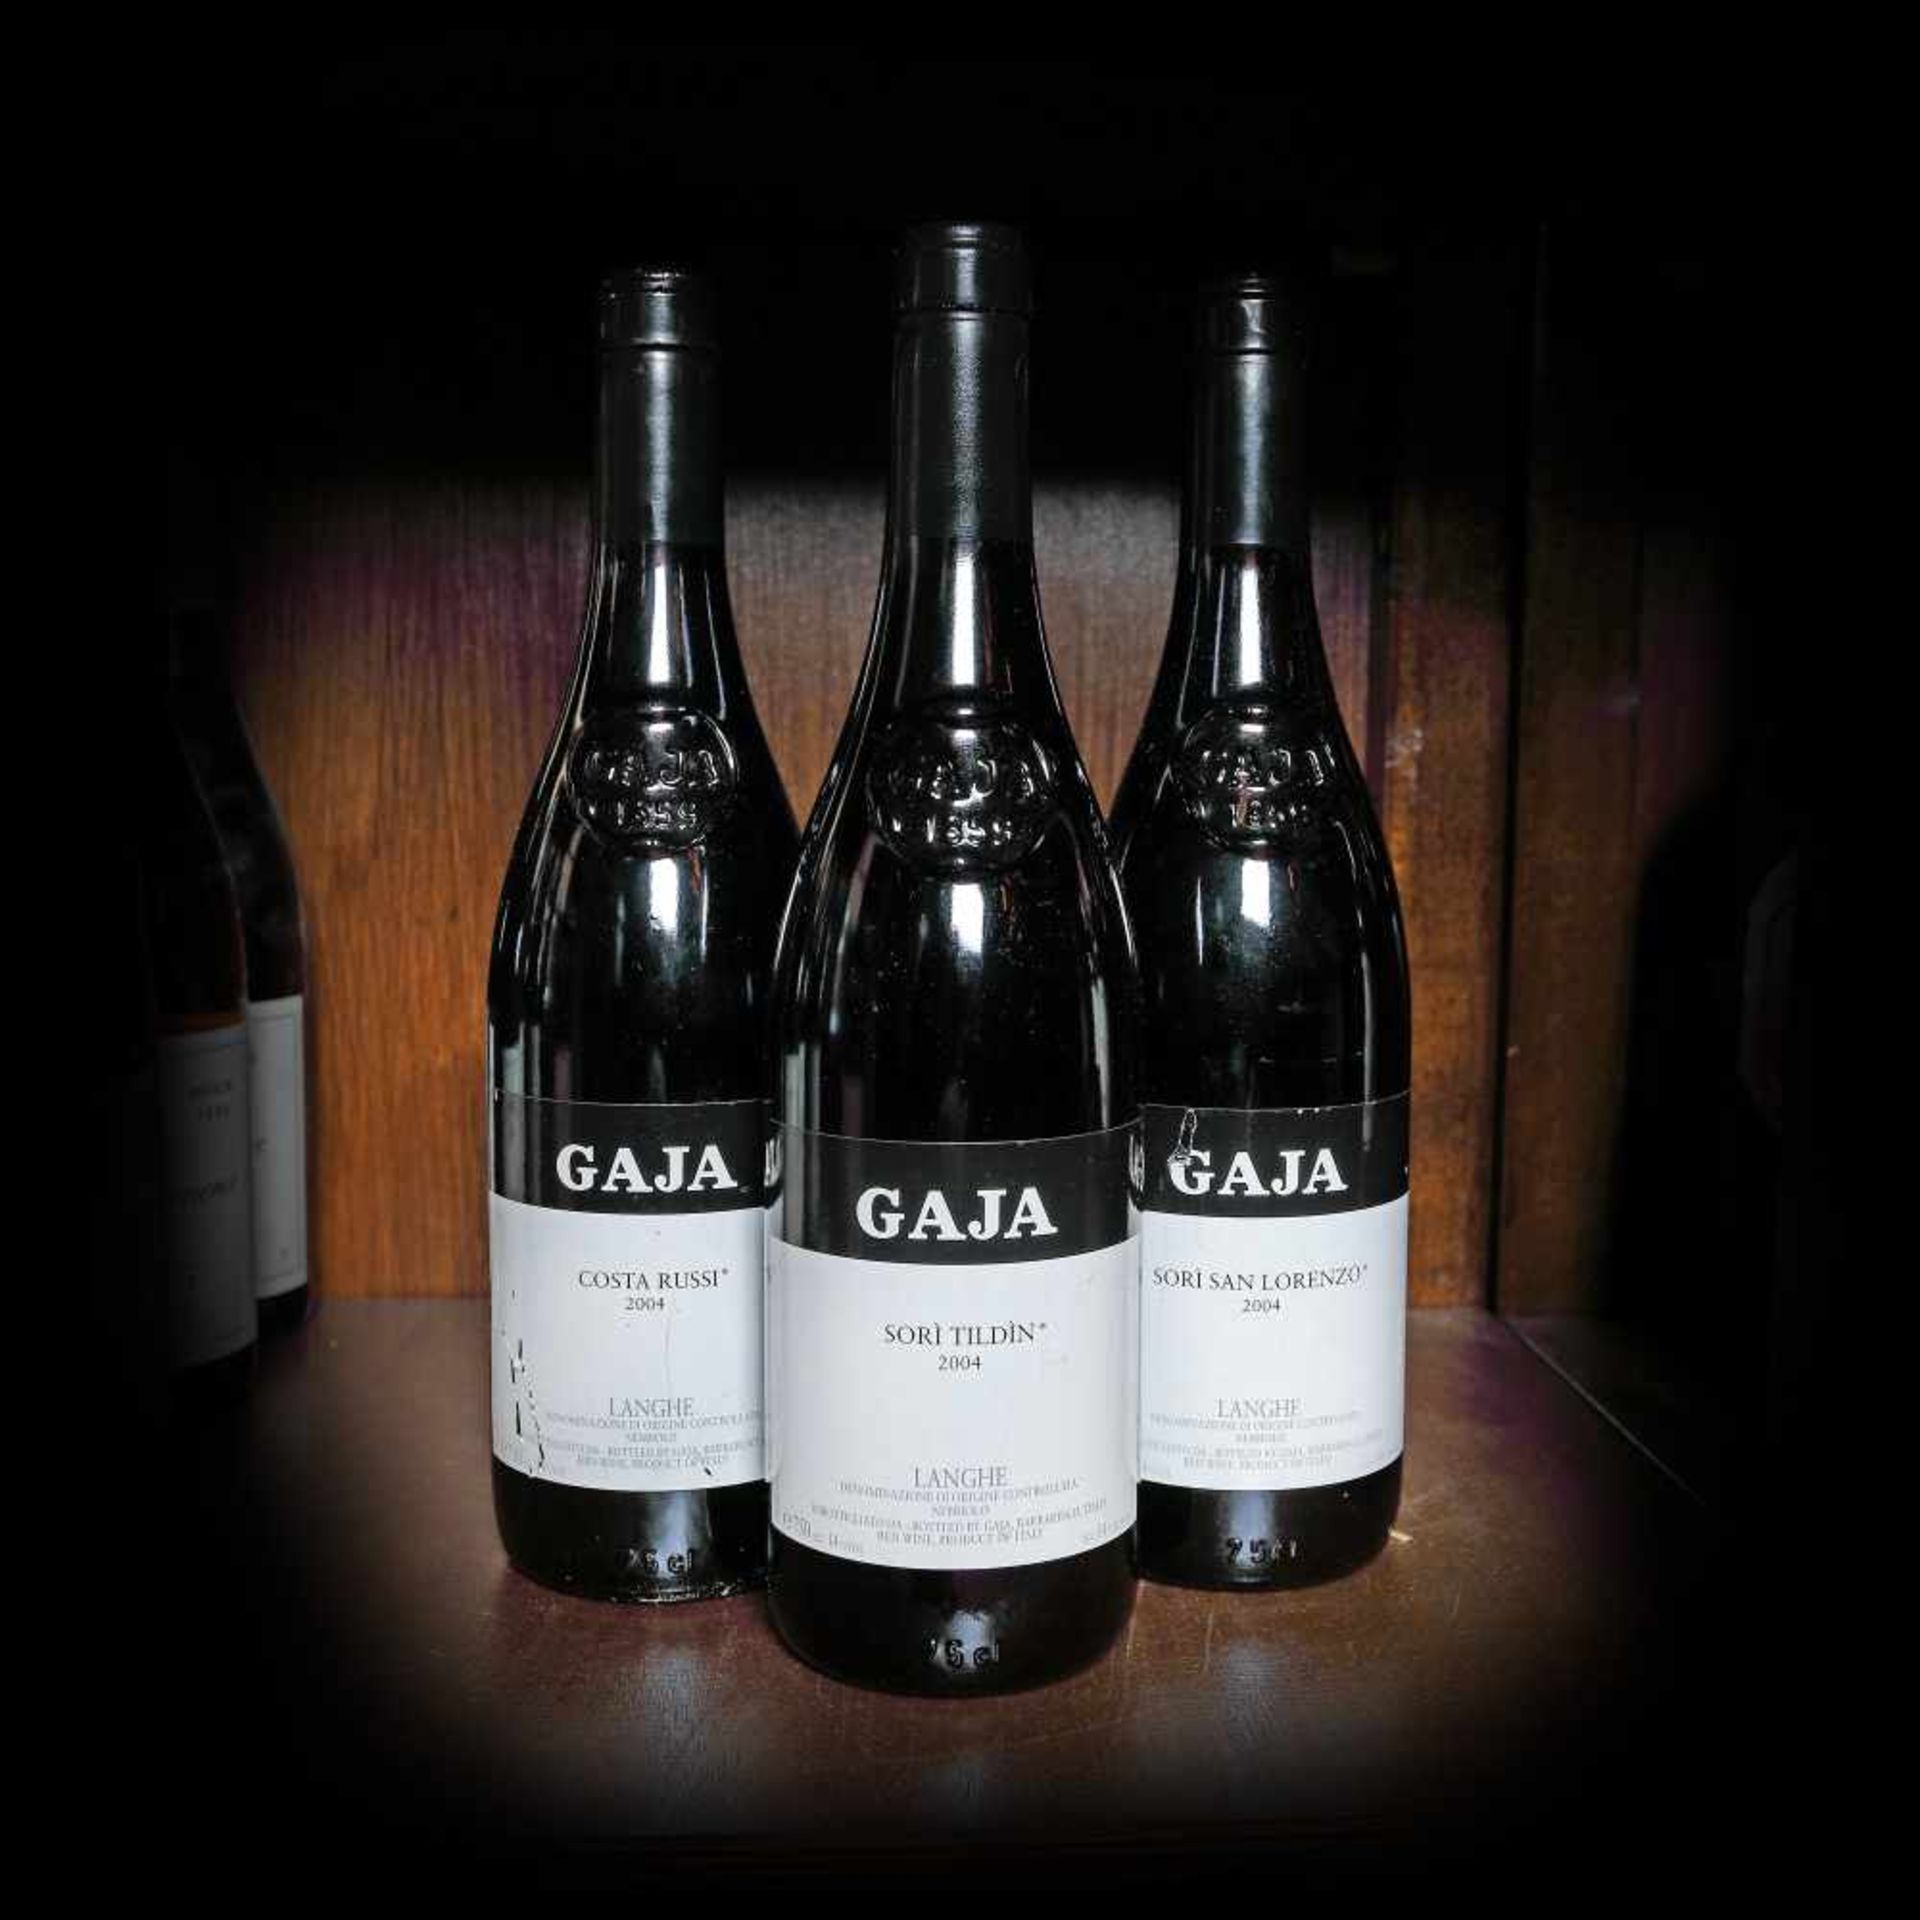 Gaja wine selection (Sori Tildin, Sori San Lorenzo, Costa Russi), Italy, 2004, 3b x 0.75l